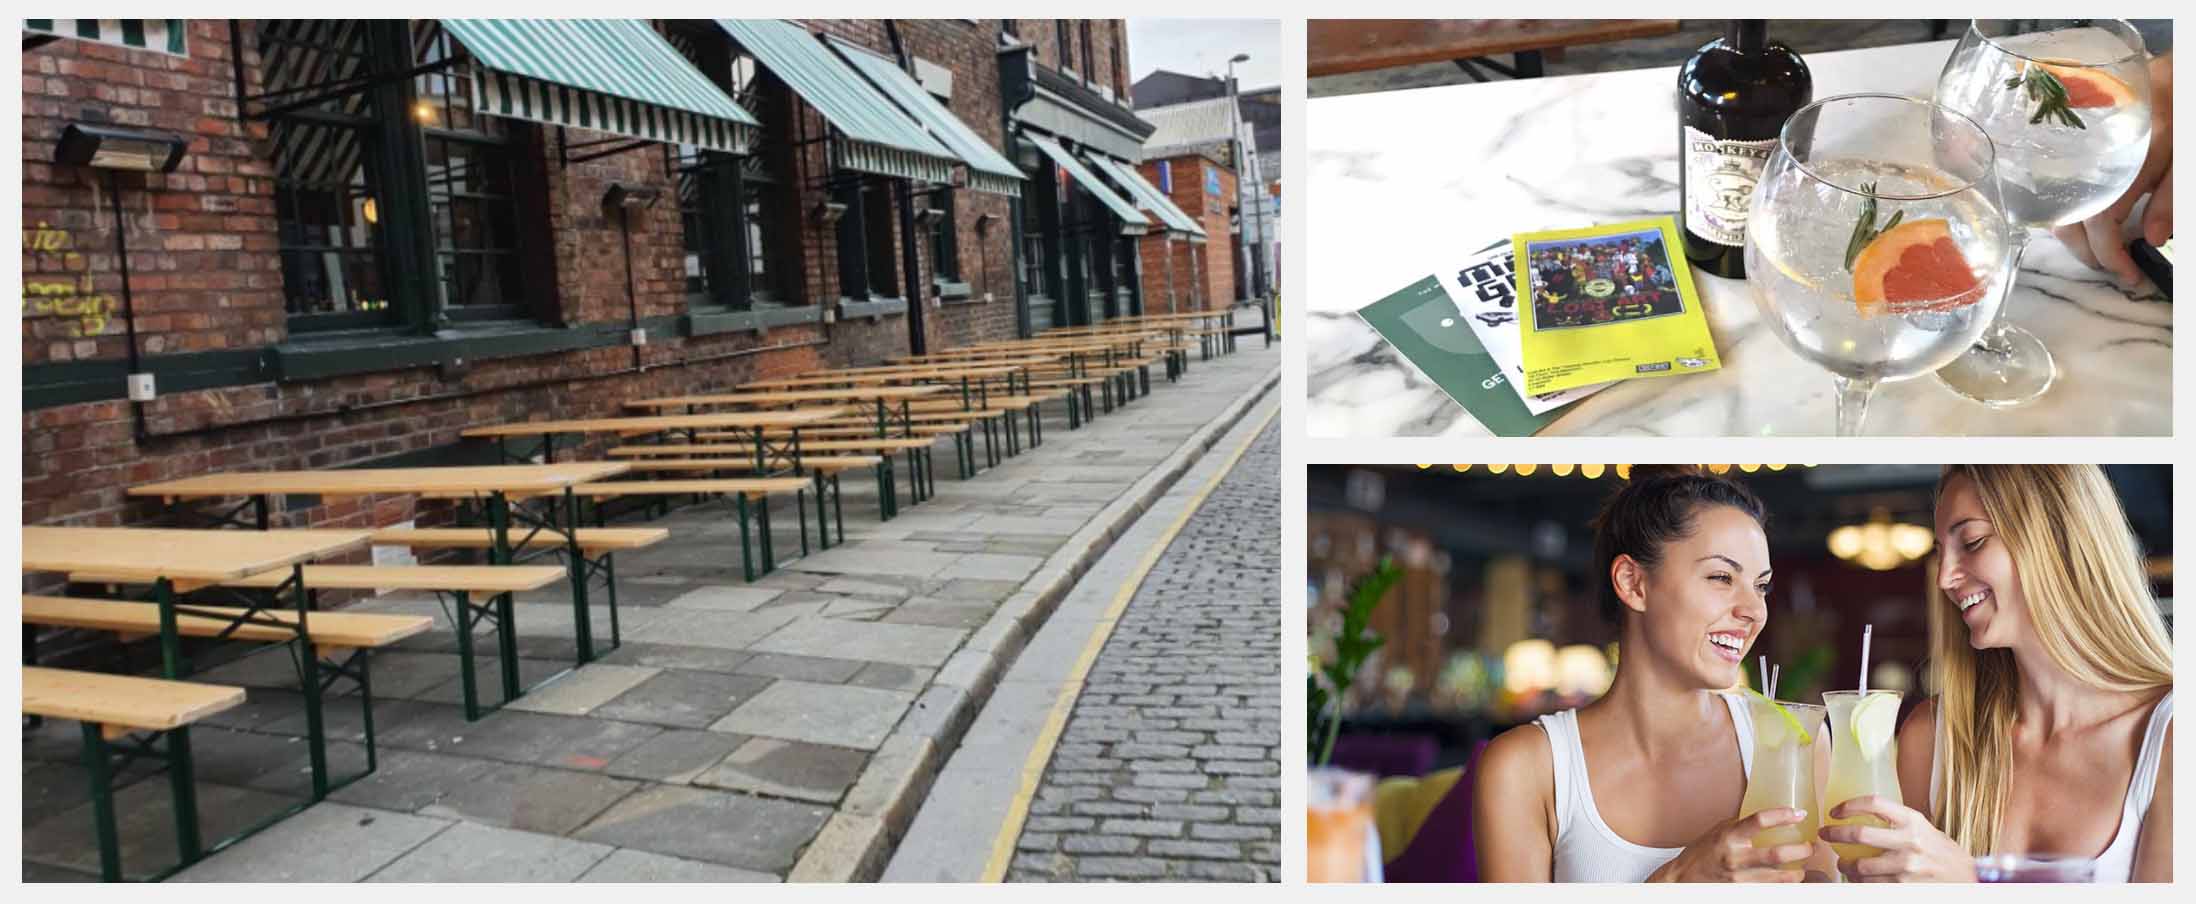 Best Beer Gardens in Liverpool - The Merchant